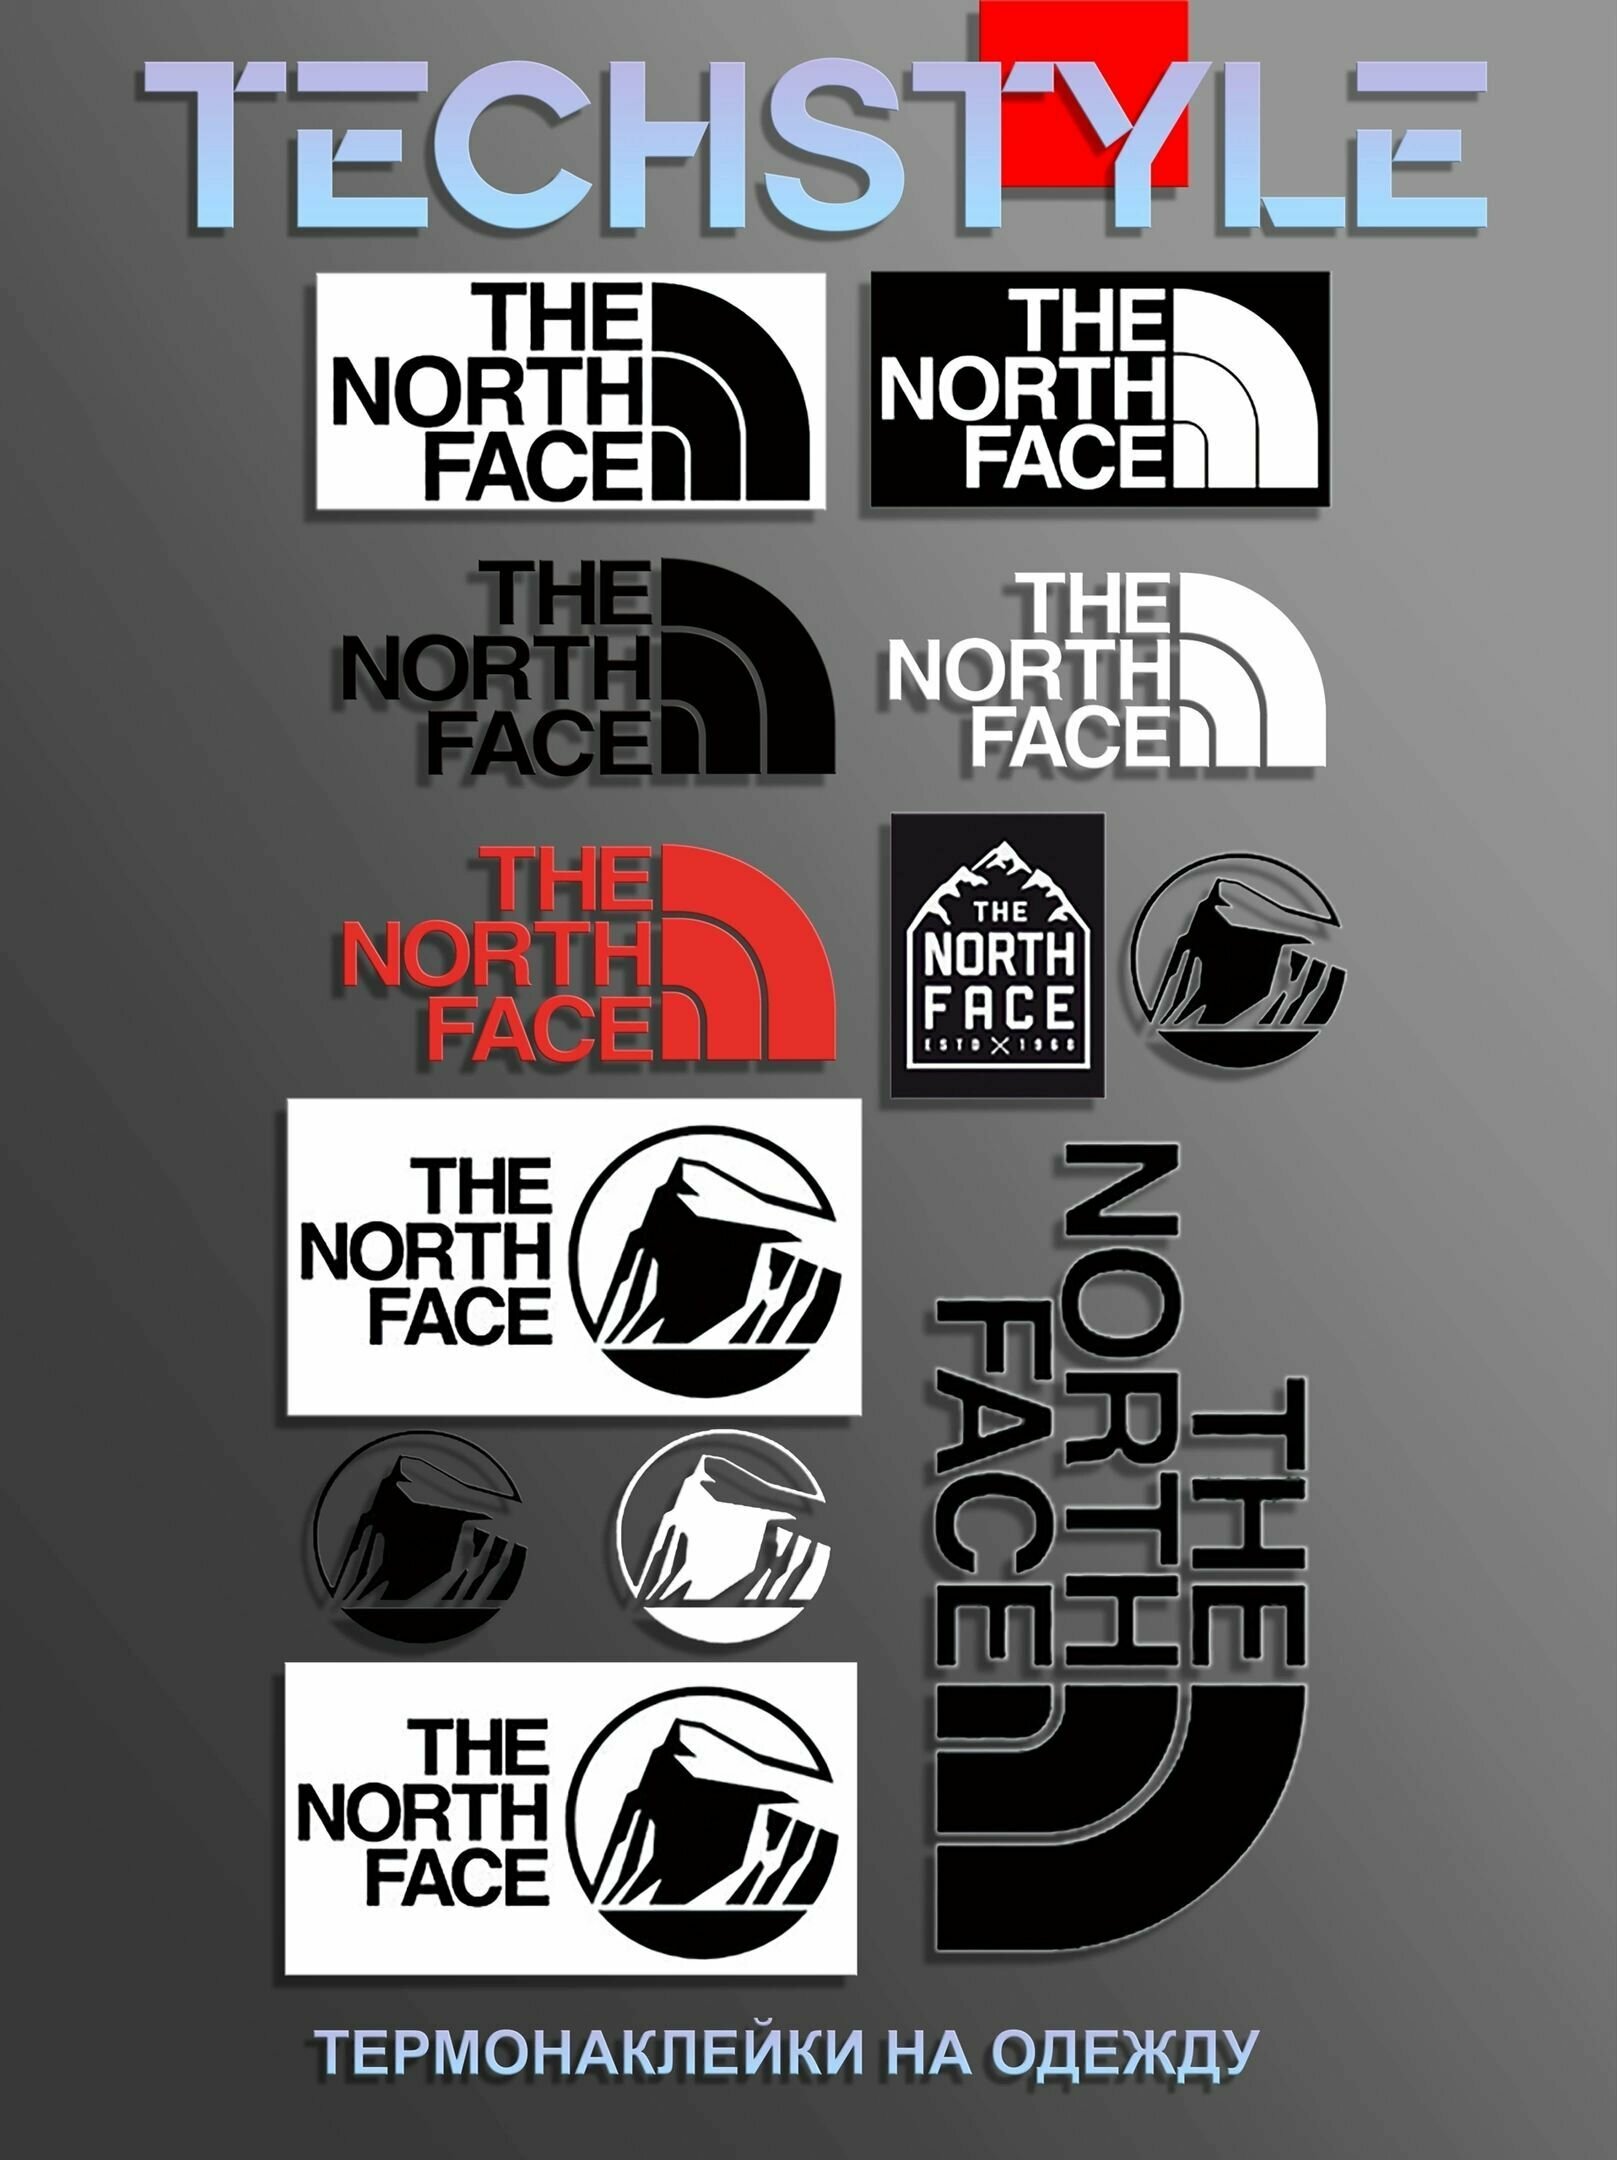 Термонаклейка на одежду/Термопринт TechStyle/DTF наклейка для одежды North Face Норт Фэйс